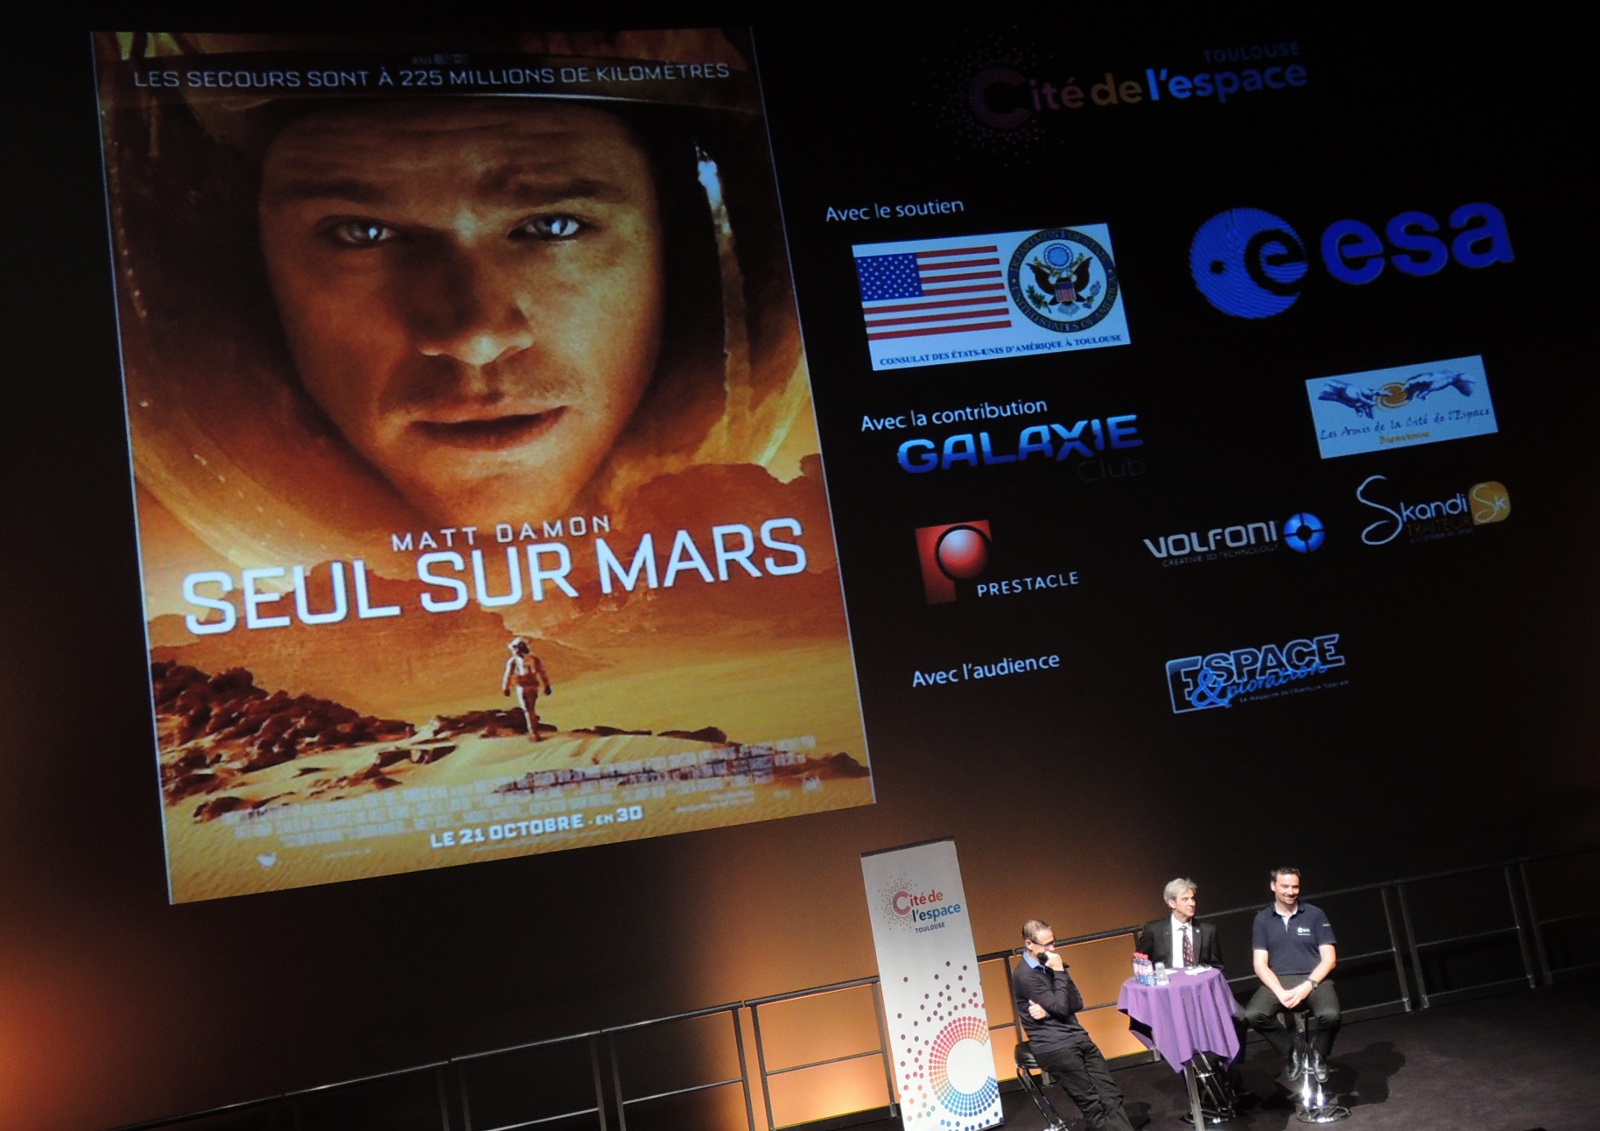 Seul sur Mars - Ridley Scott - Matt Damon - Jessica Chastain - Avant-première - Cité de l'espace - 3D - Imax - Toulouse 